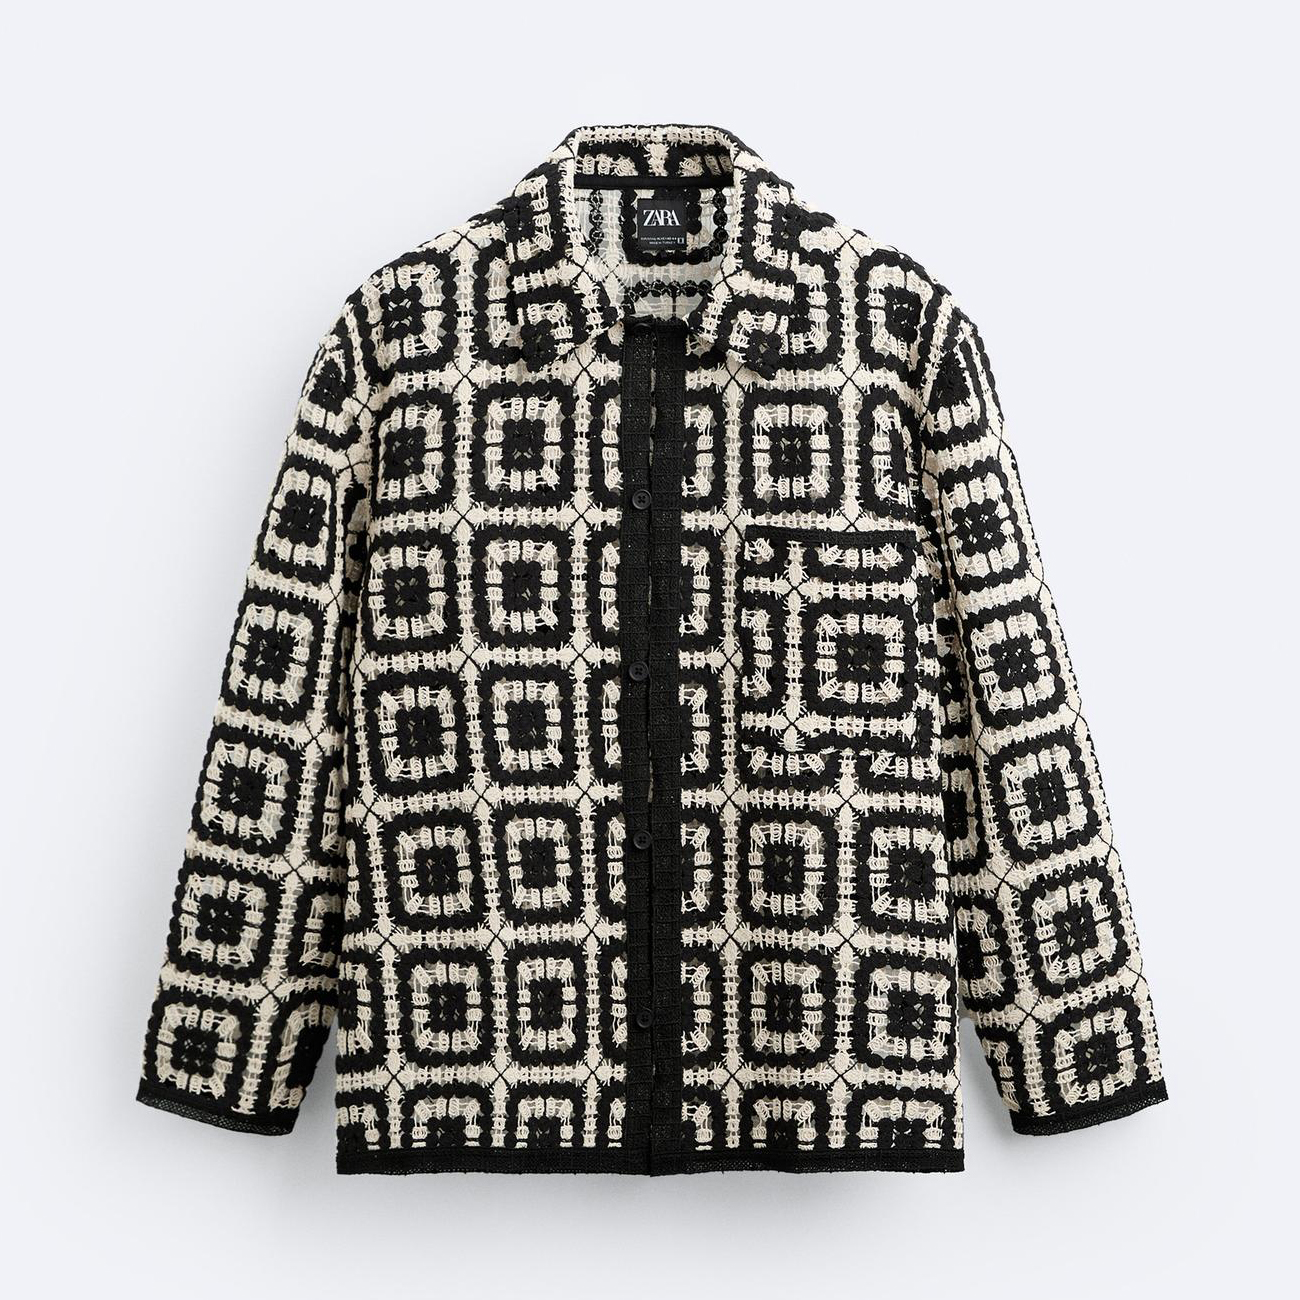 Кардиган Zara Crochet, черный/белый кардиган zara размер 164 белый черный